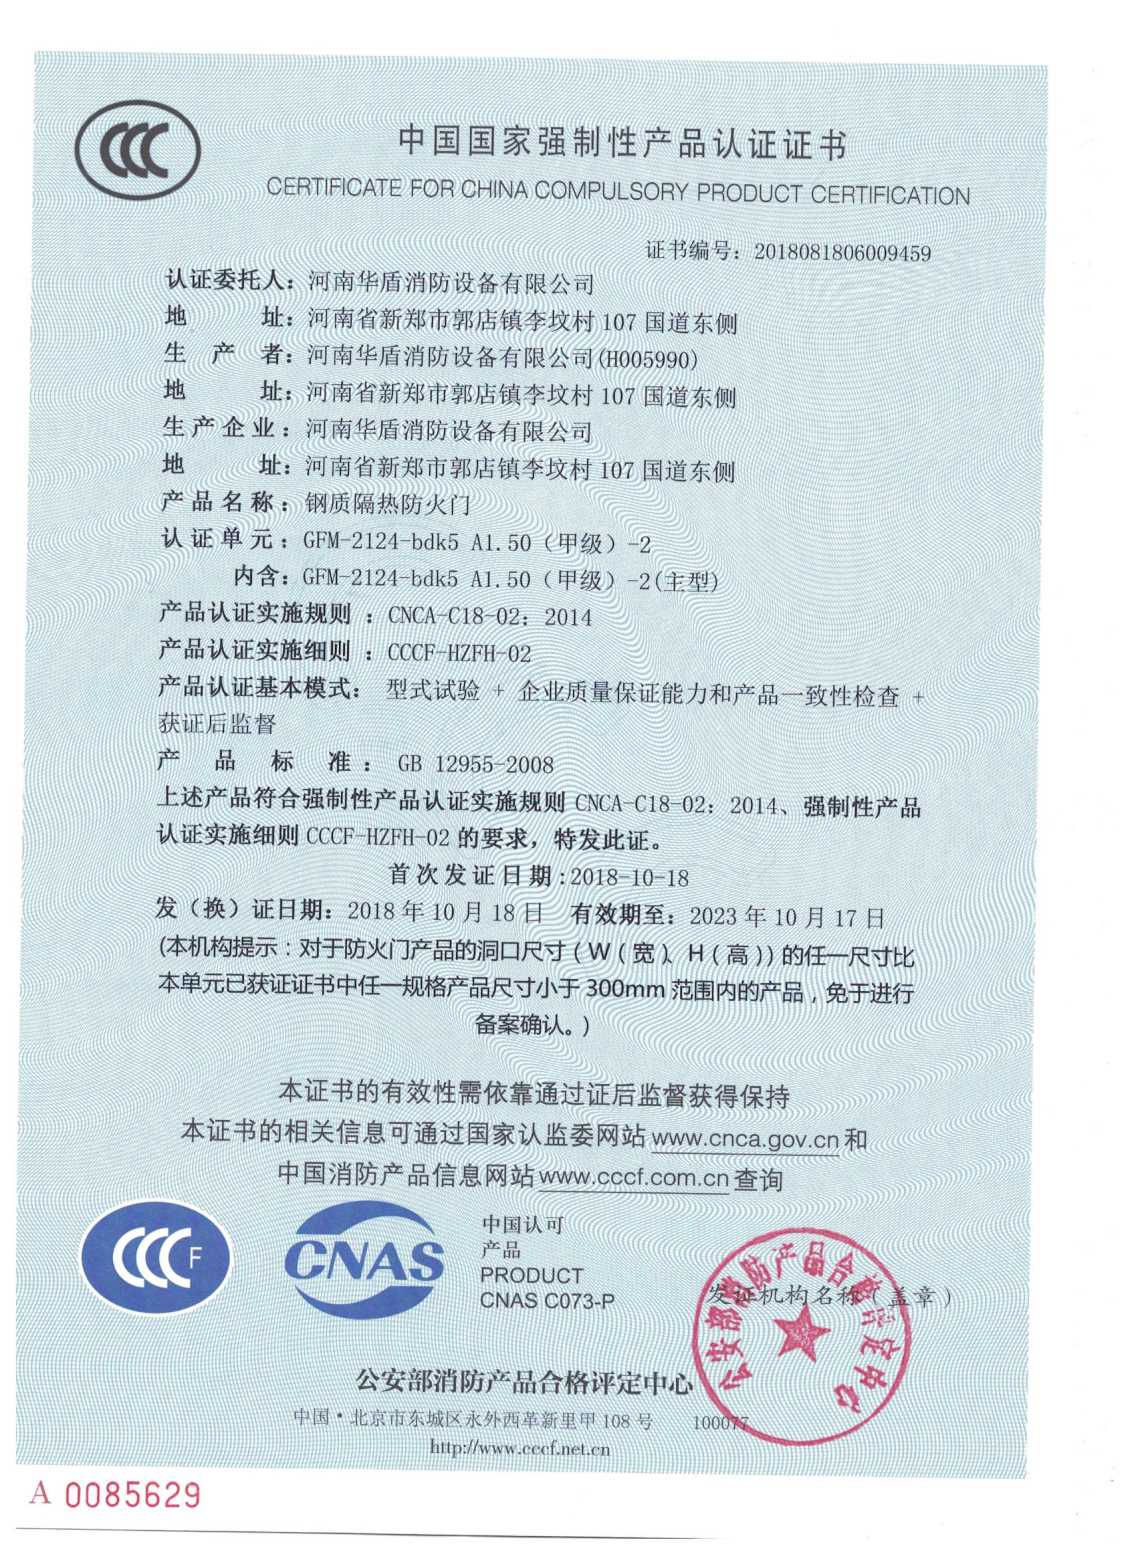 GFM-2124-bdk5A1.50（甲级）-2-3C证书